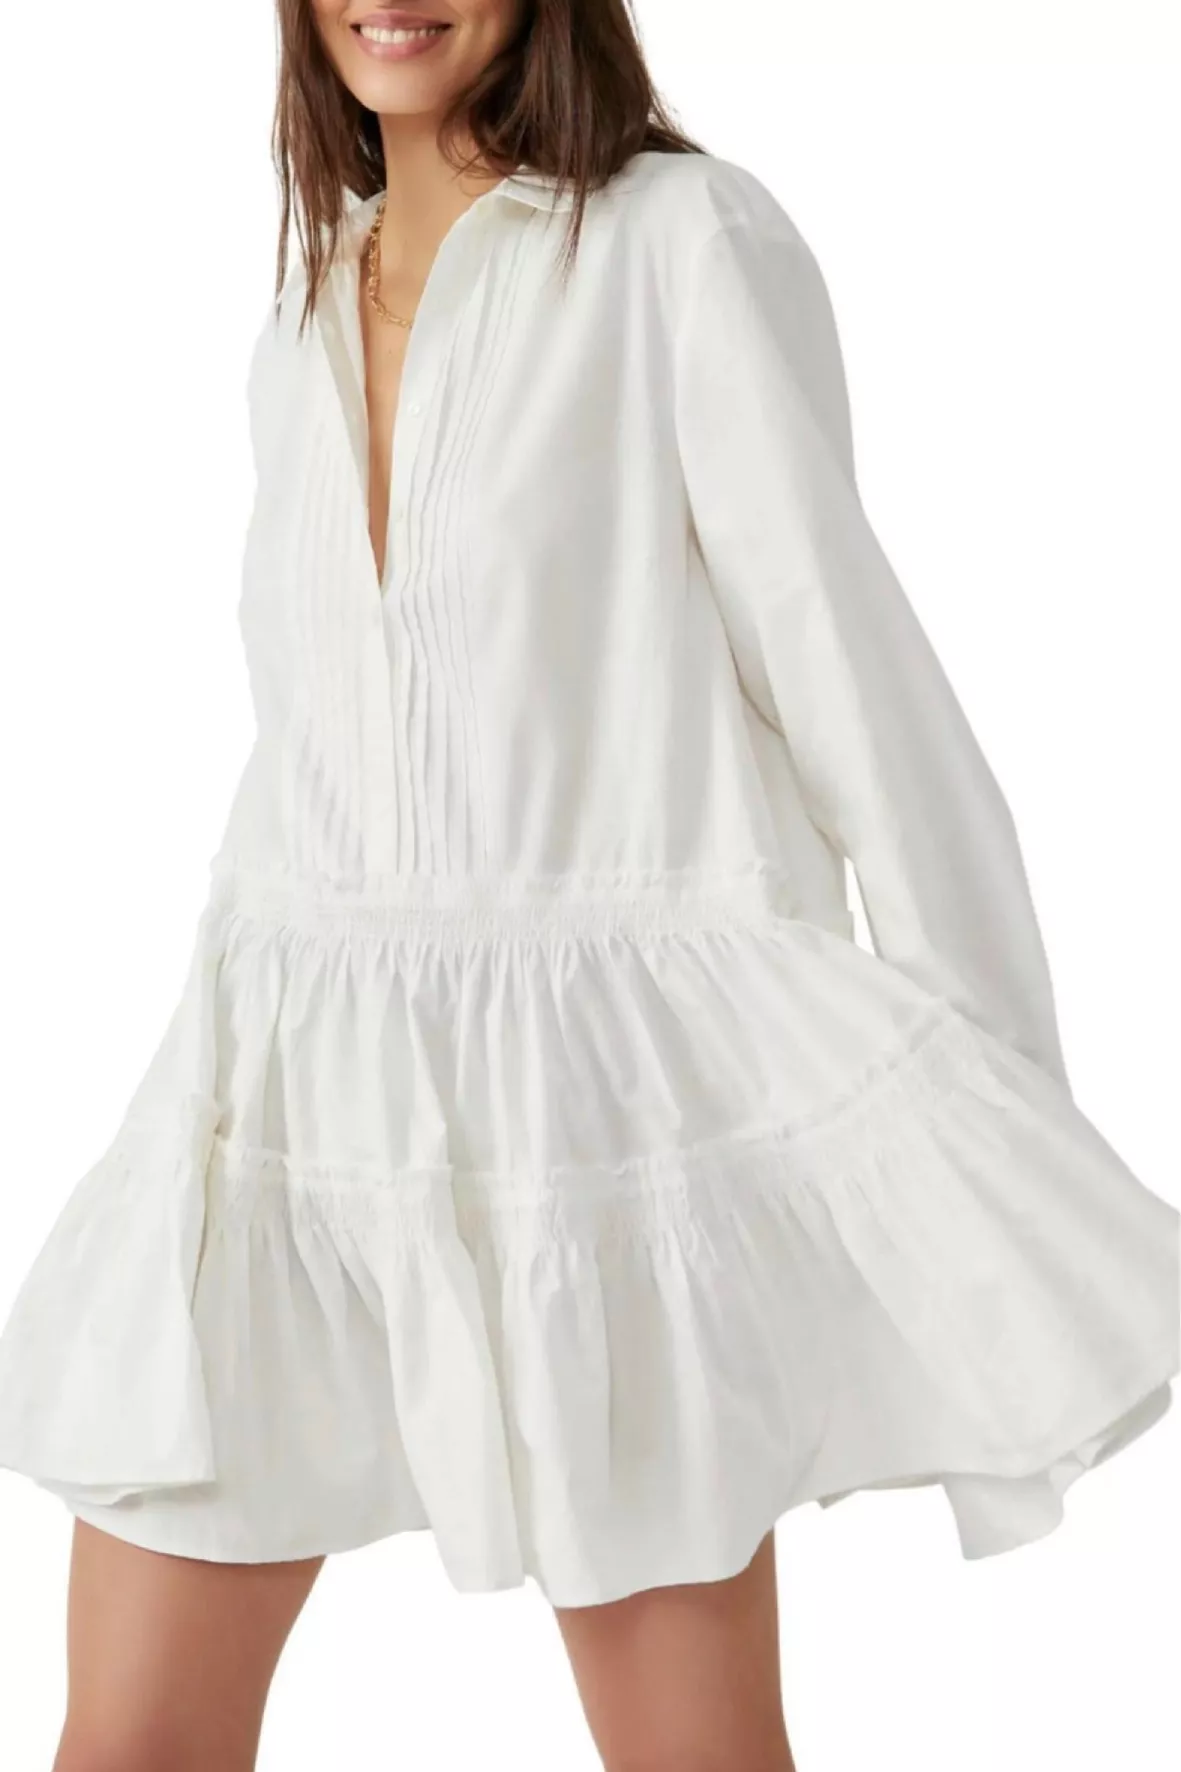 Cotton Poplin Mini Dress curated on LTK